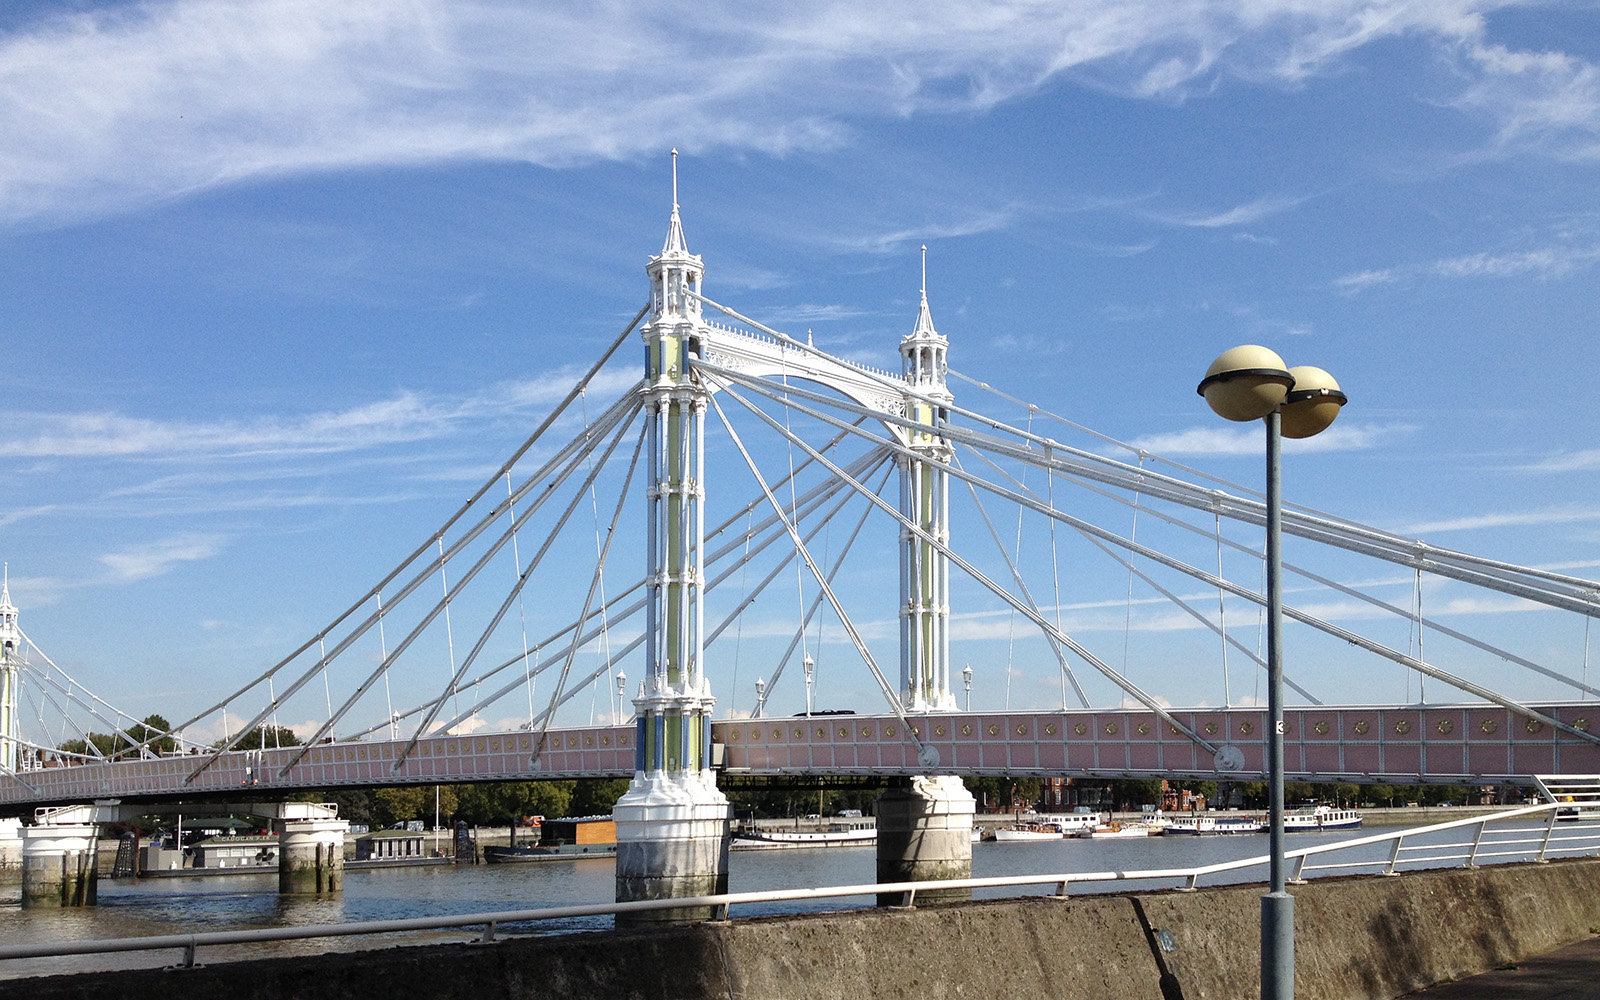 Albert Bridge 11 September 2015